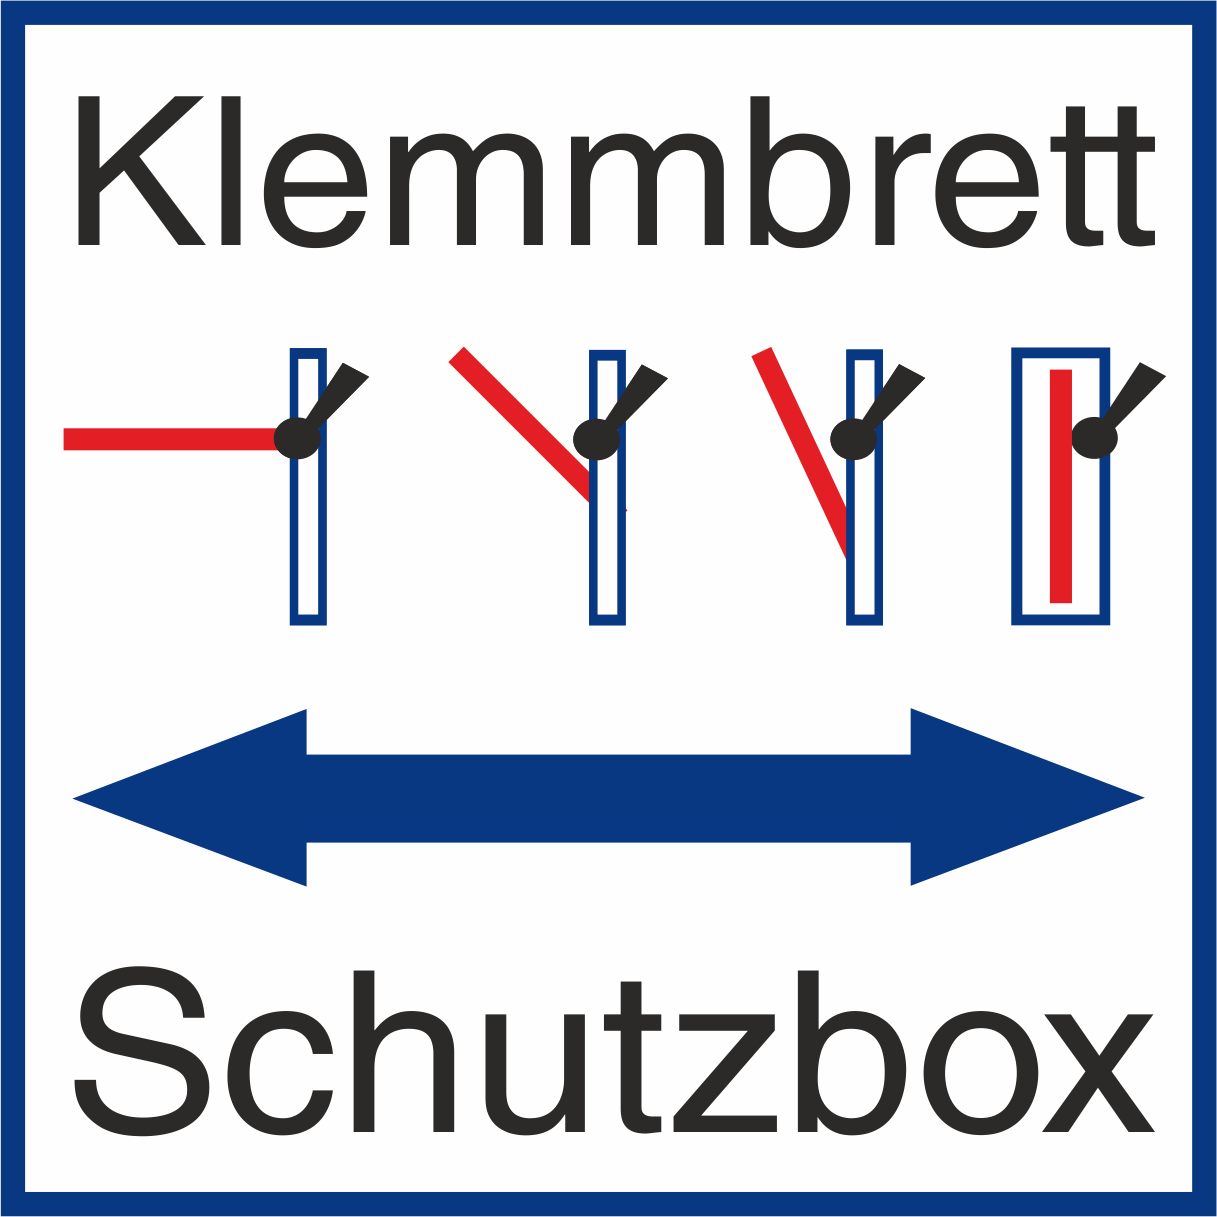 Klemmbrett Schutzbox